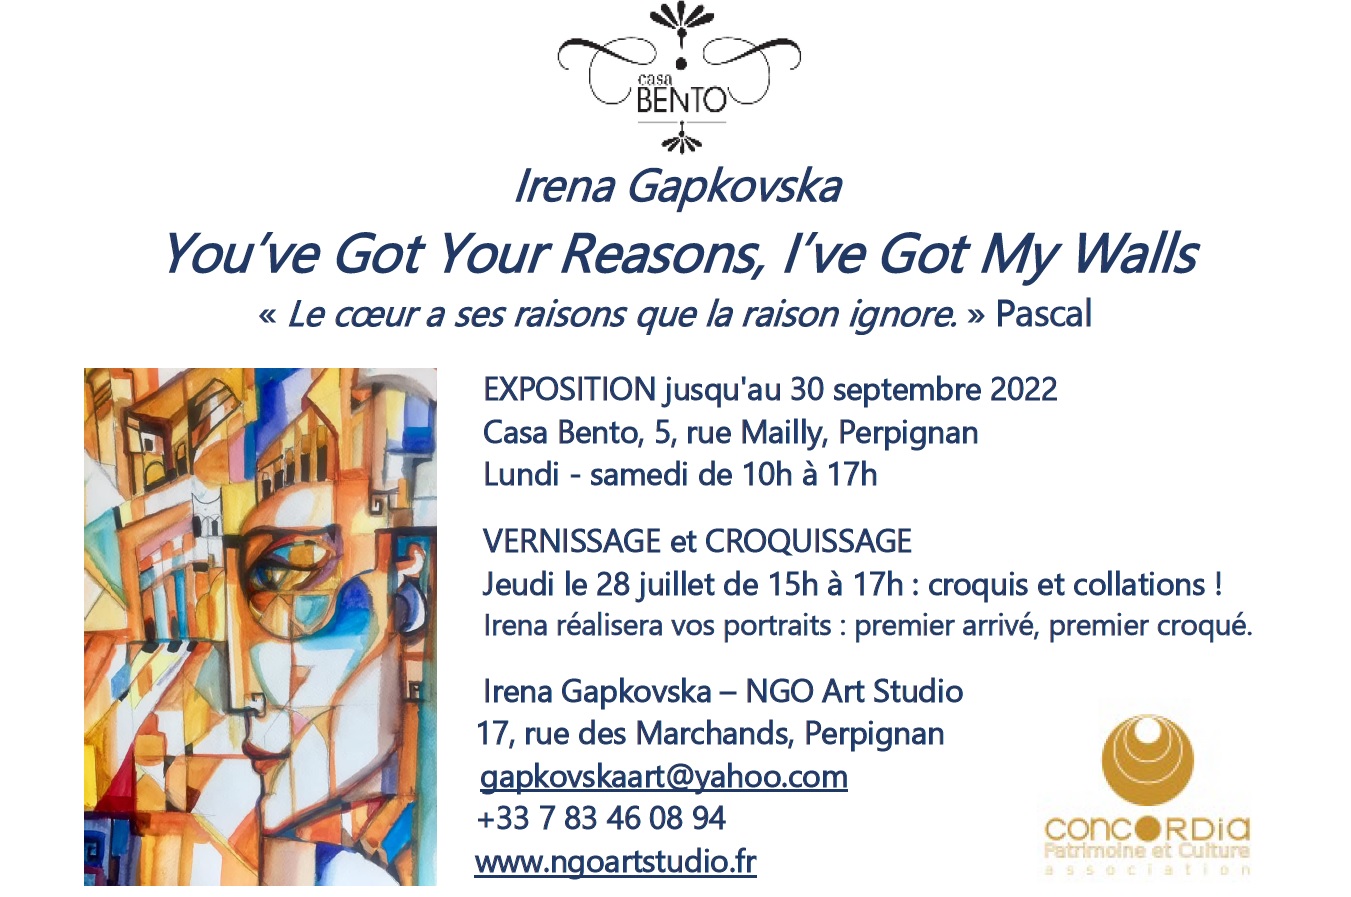 Irena Gapkovska exhibition